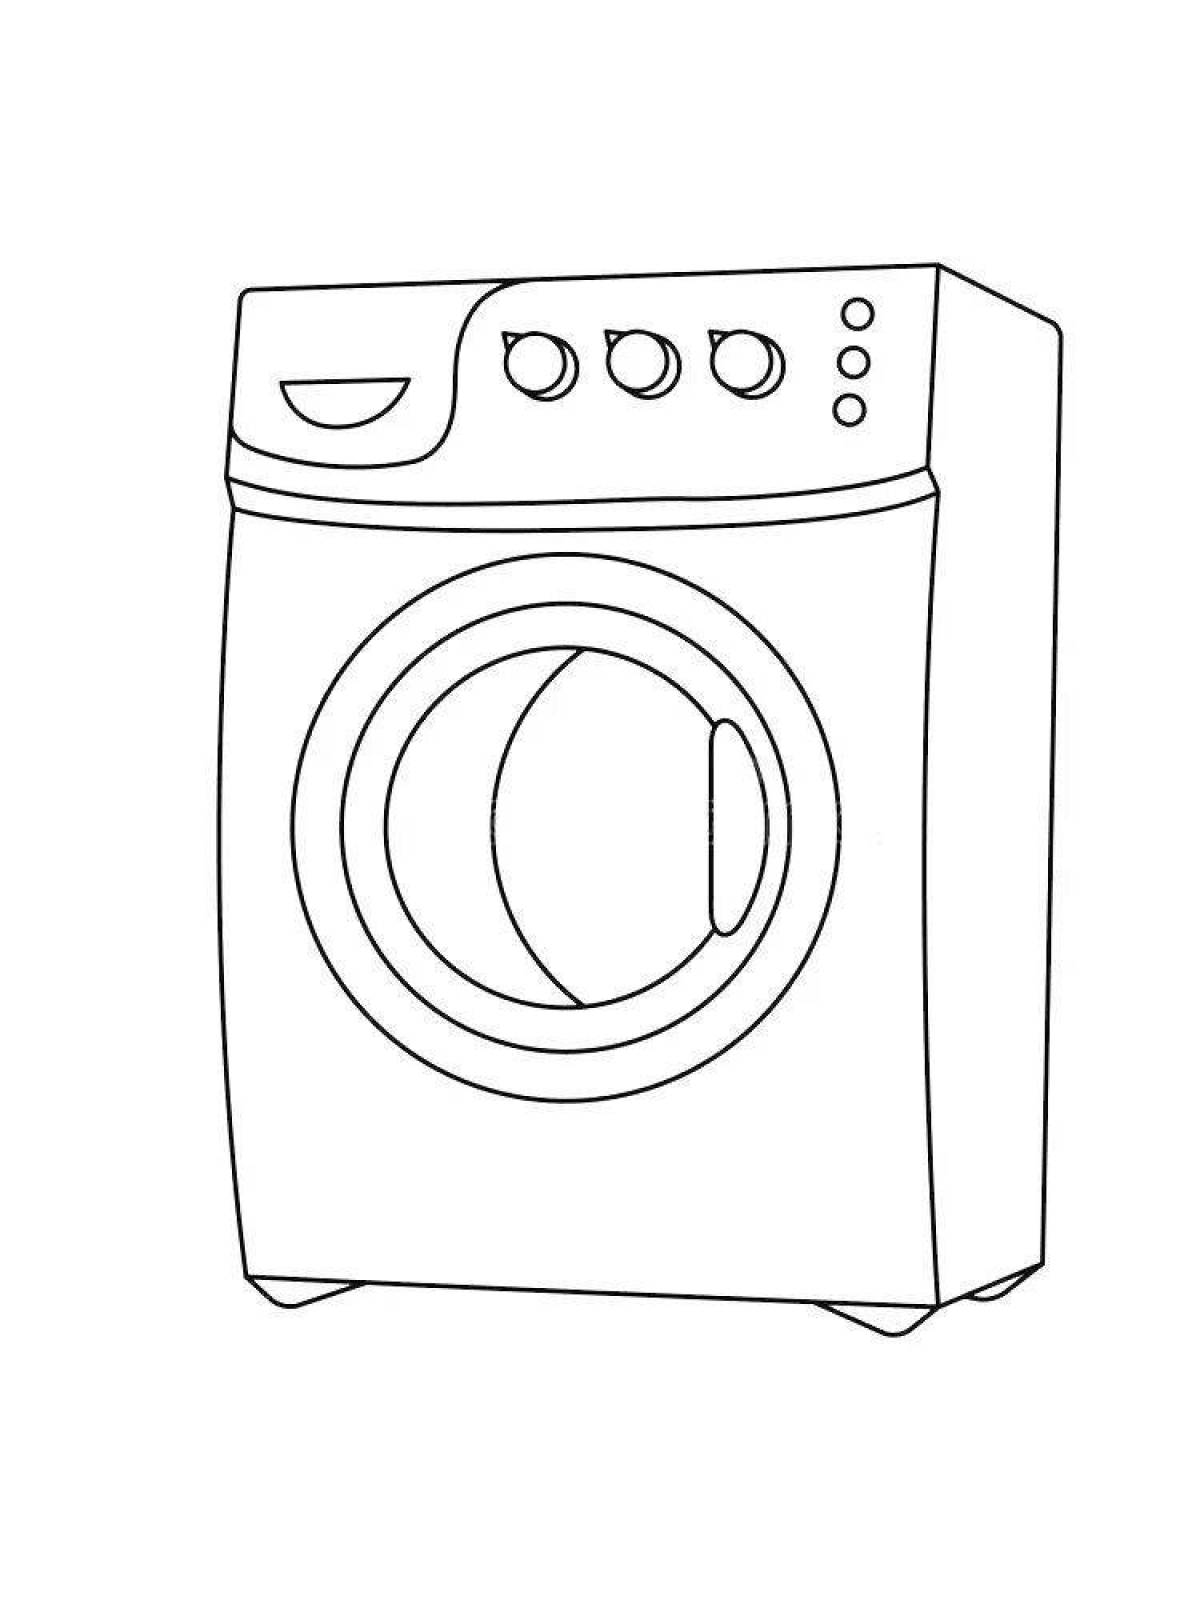 Coloring page elegant washing machine